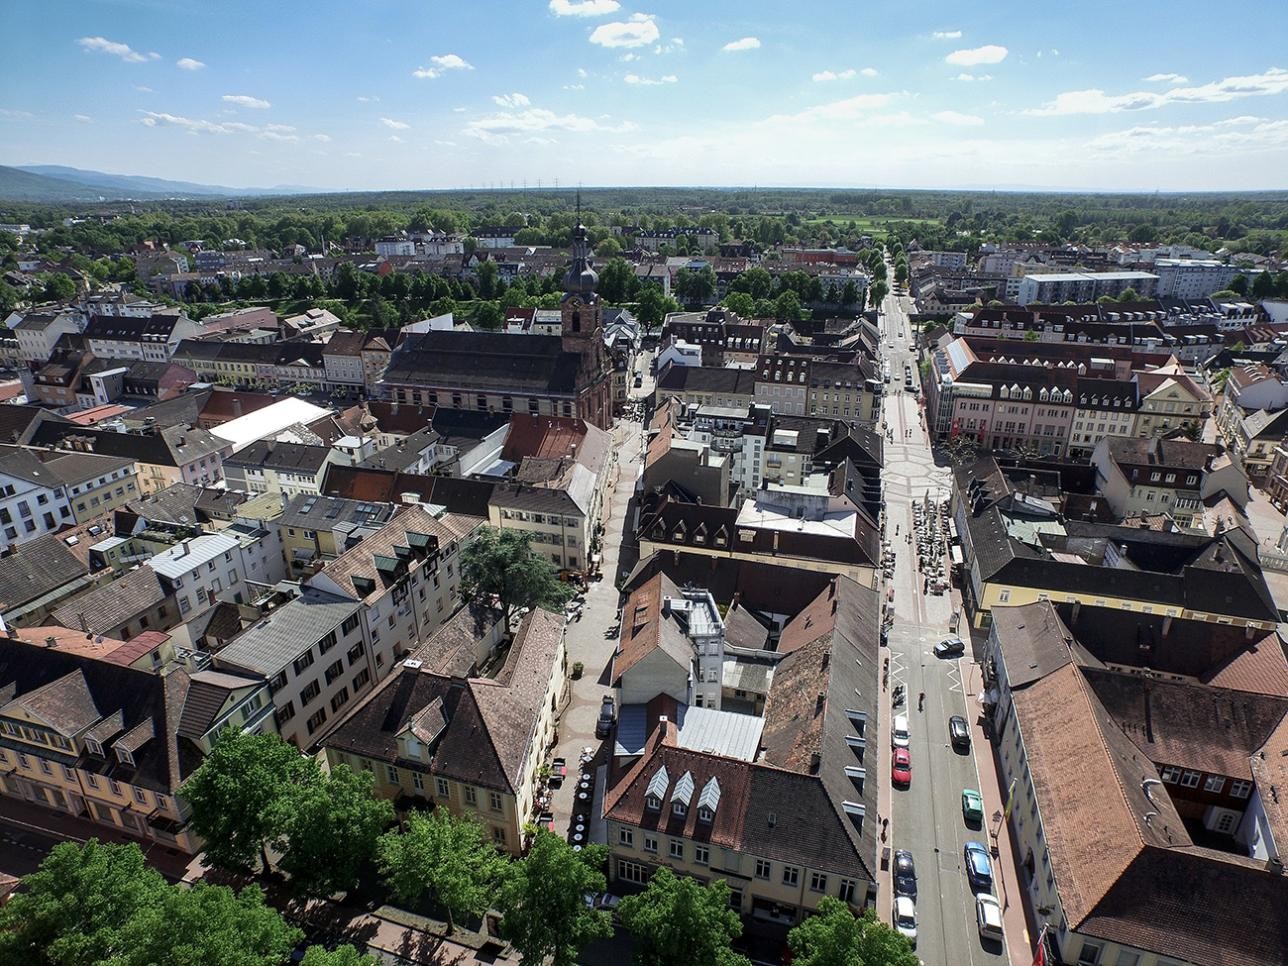 Aerial view of the center of Rastatt